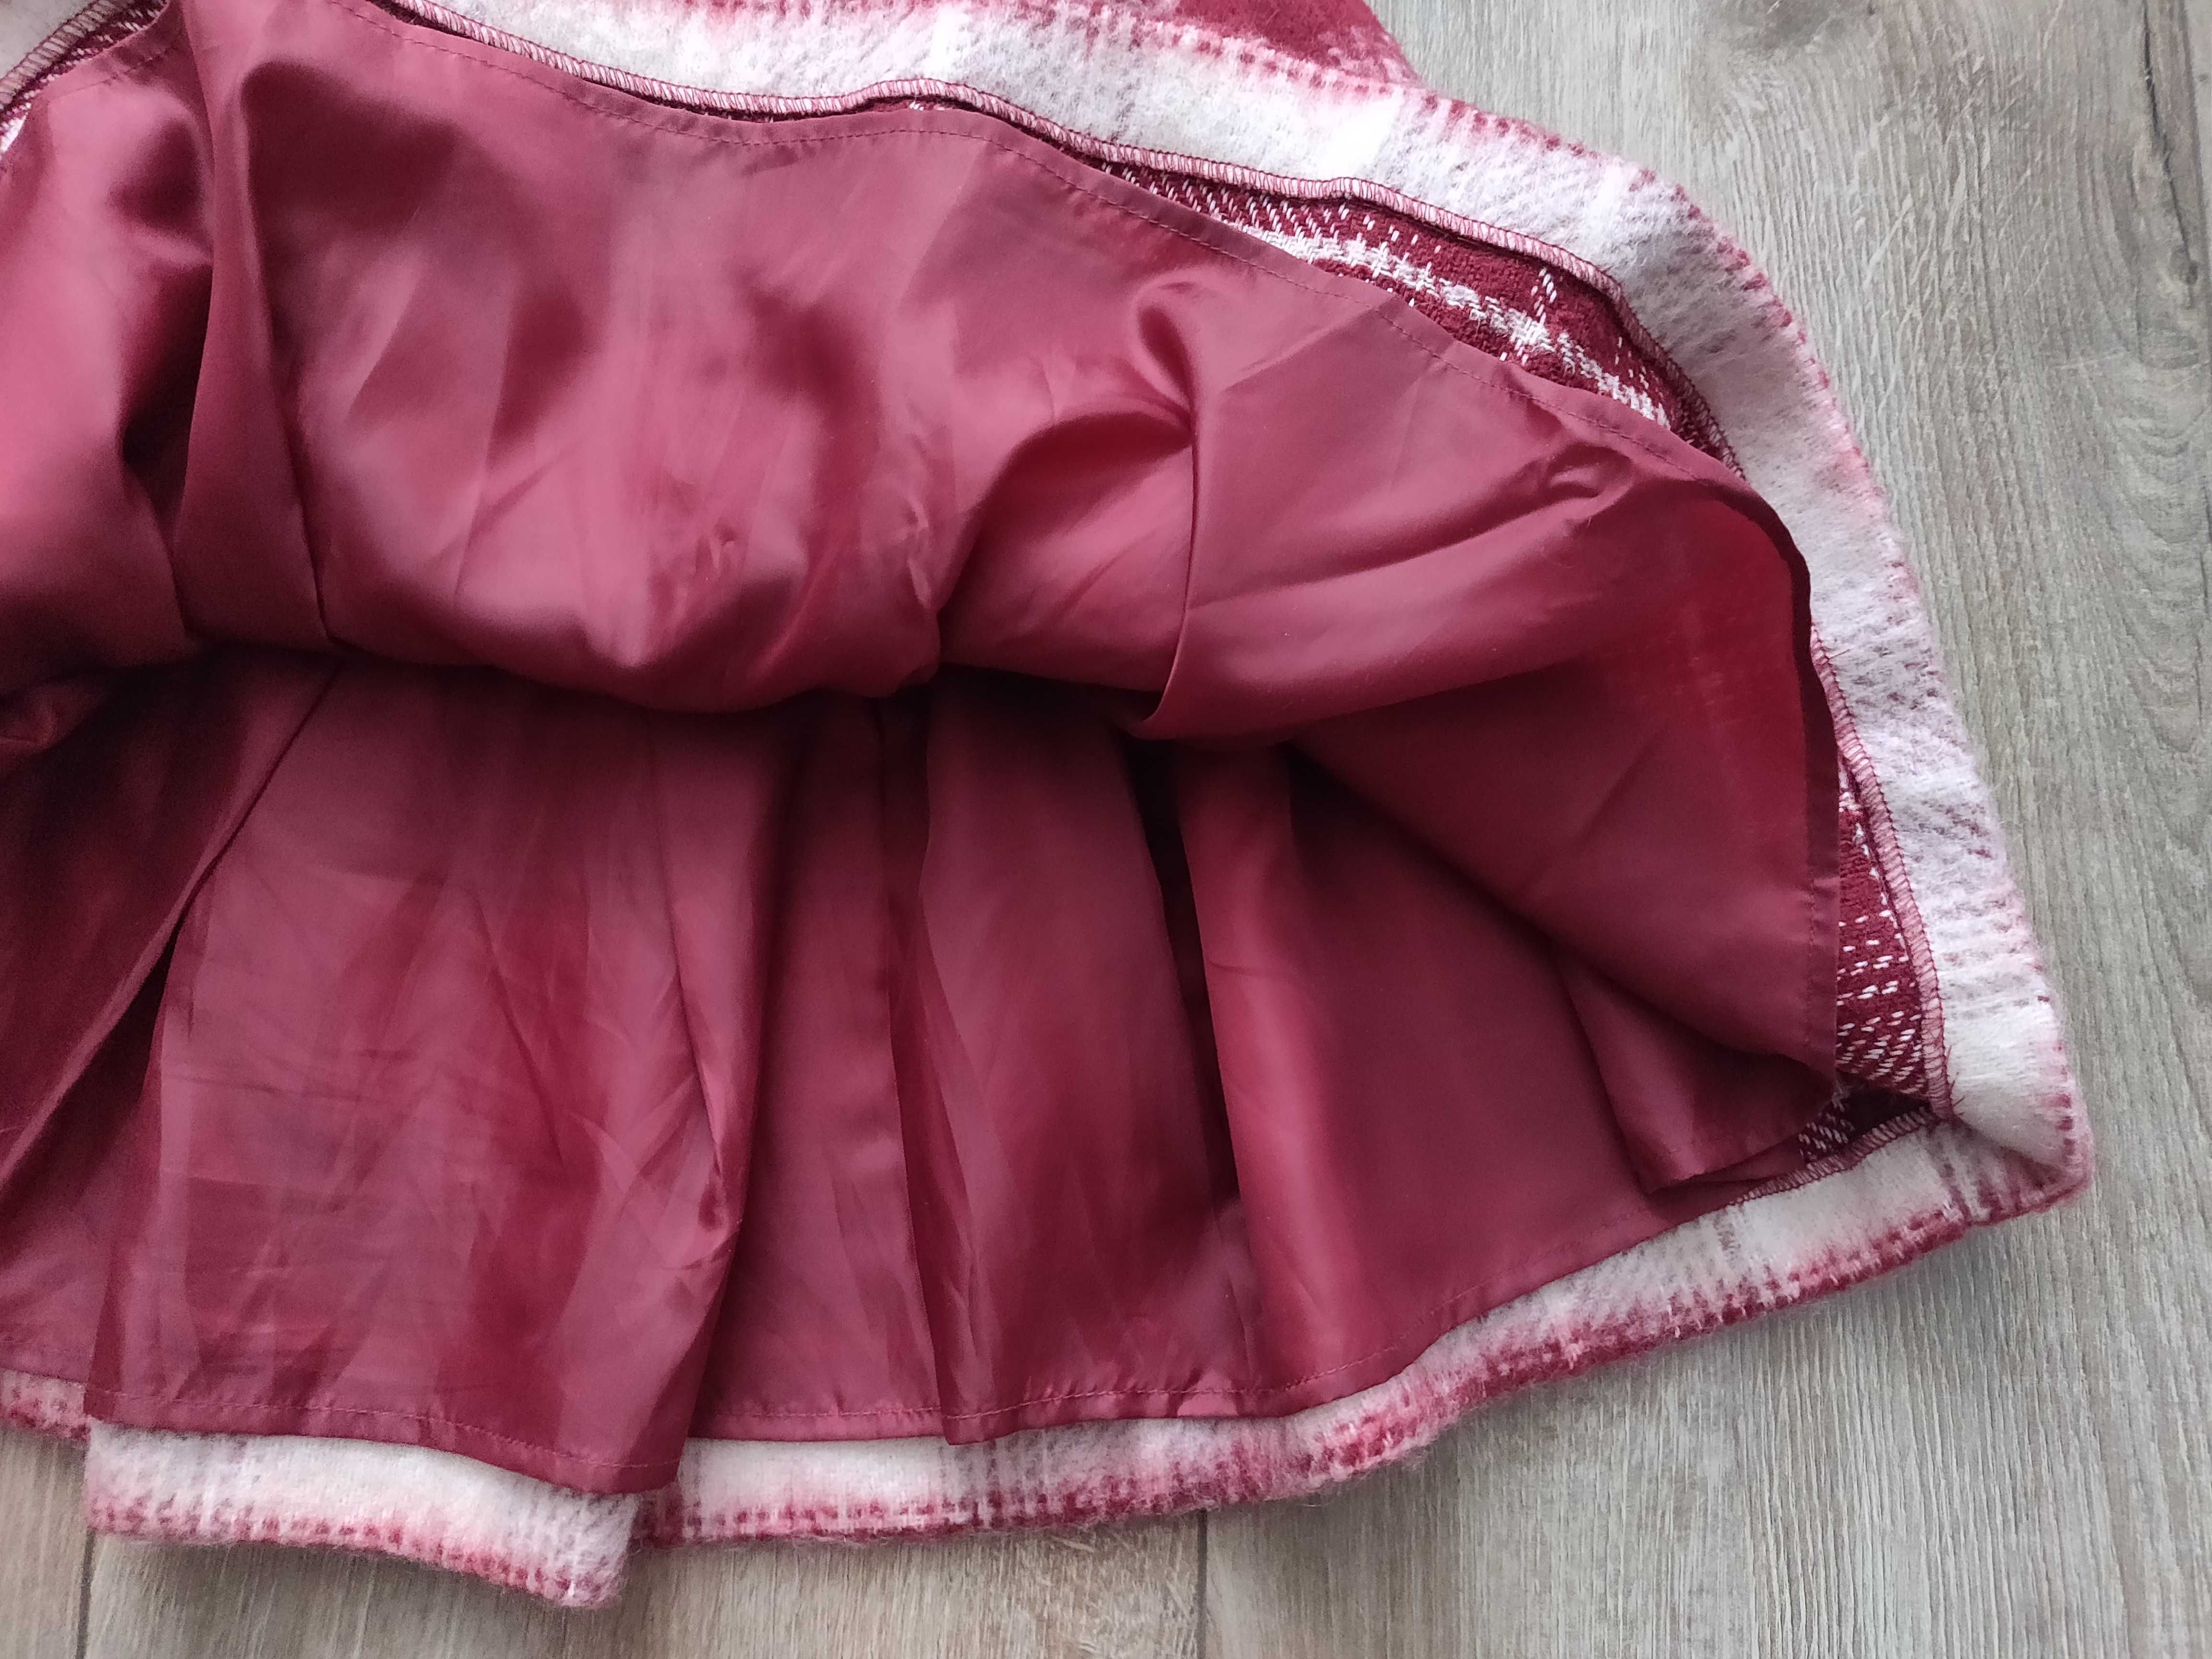 Утепленная юбка Vero moda (Дания) шотландская клетка, рост 155 см.